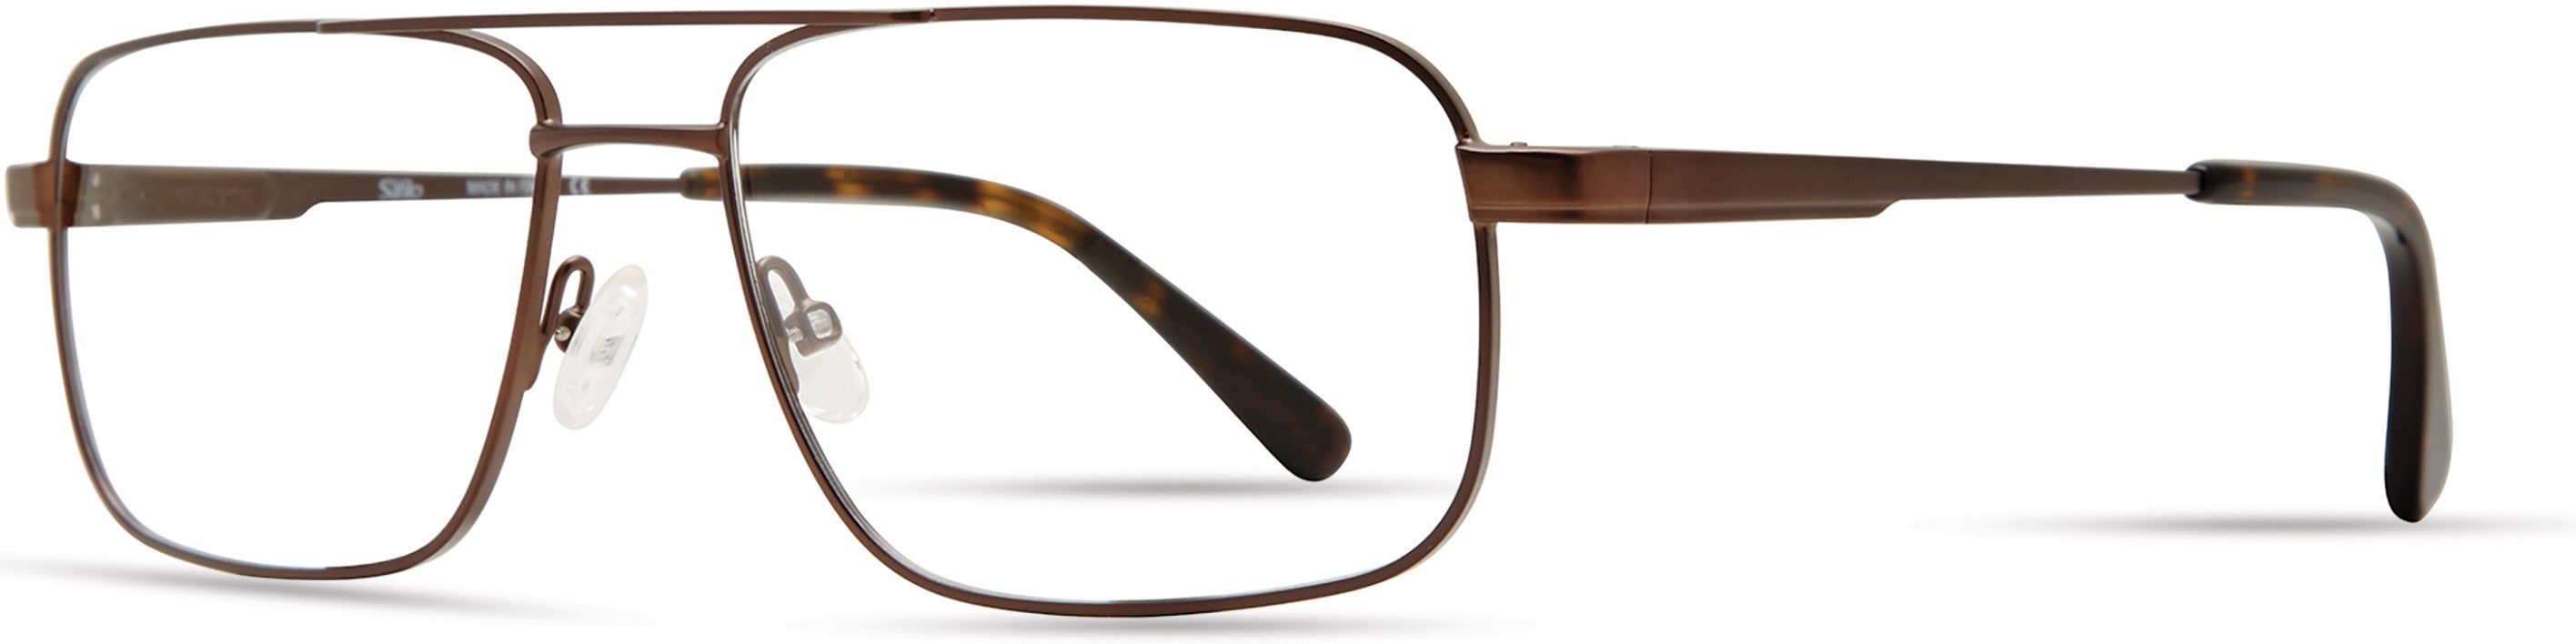  Elasta 7236 Rectangular Eyeglasses 0R0Z-0R0Z  Dark Brown (00 Demo Lens)